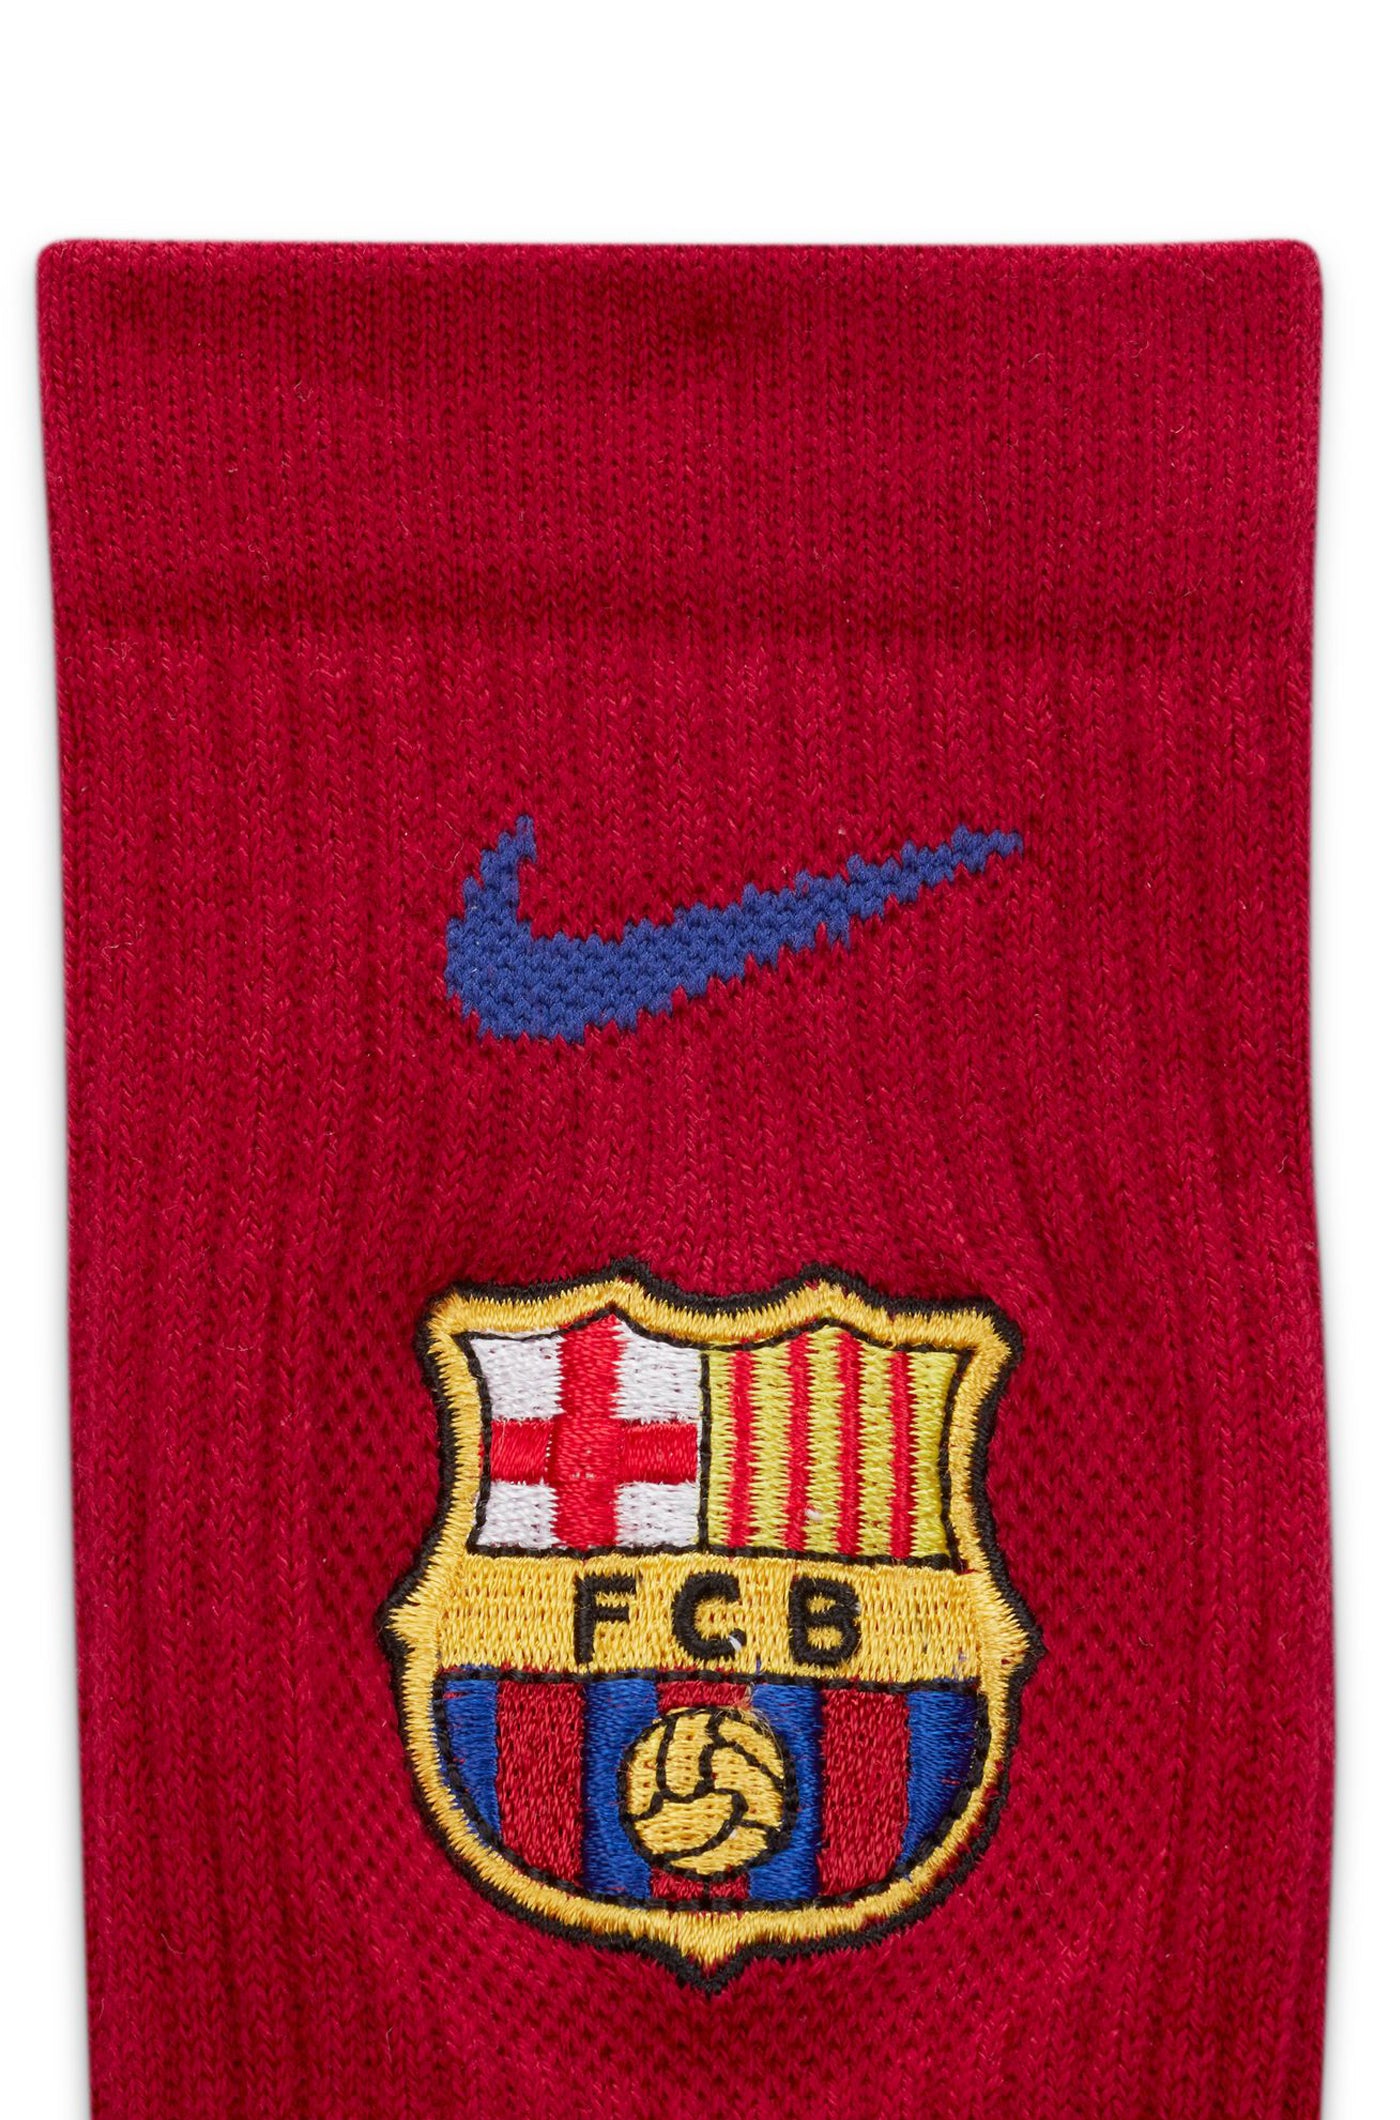 3-pack socks Barça Nike – Barça Official Store Spotify Camp Nou